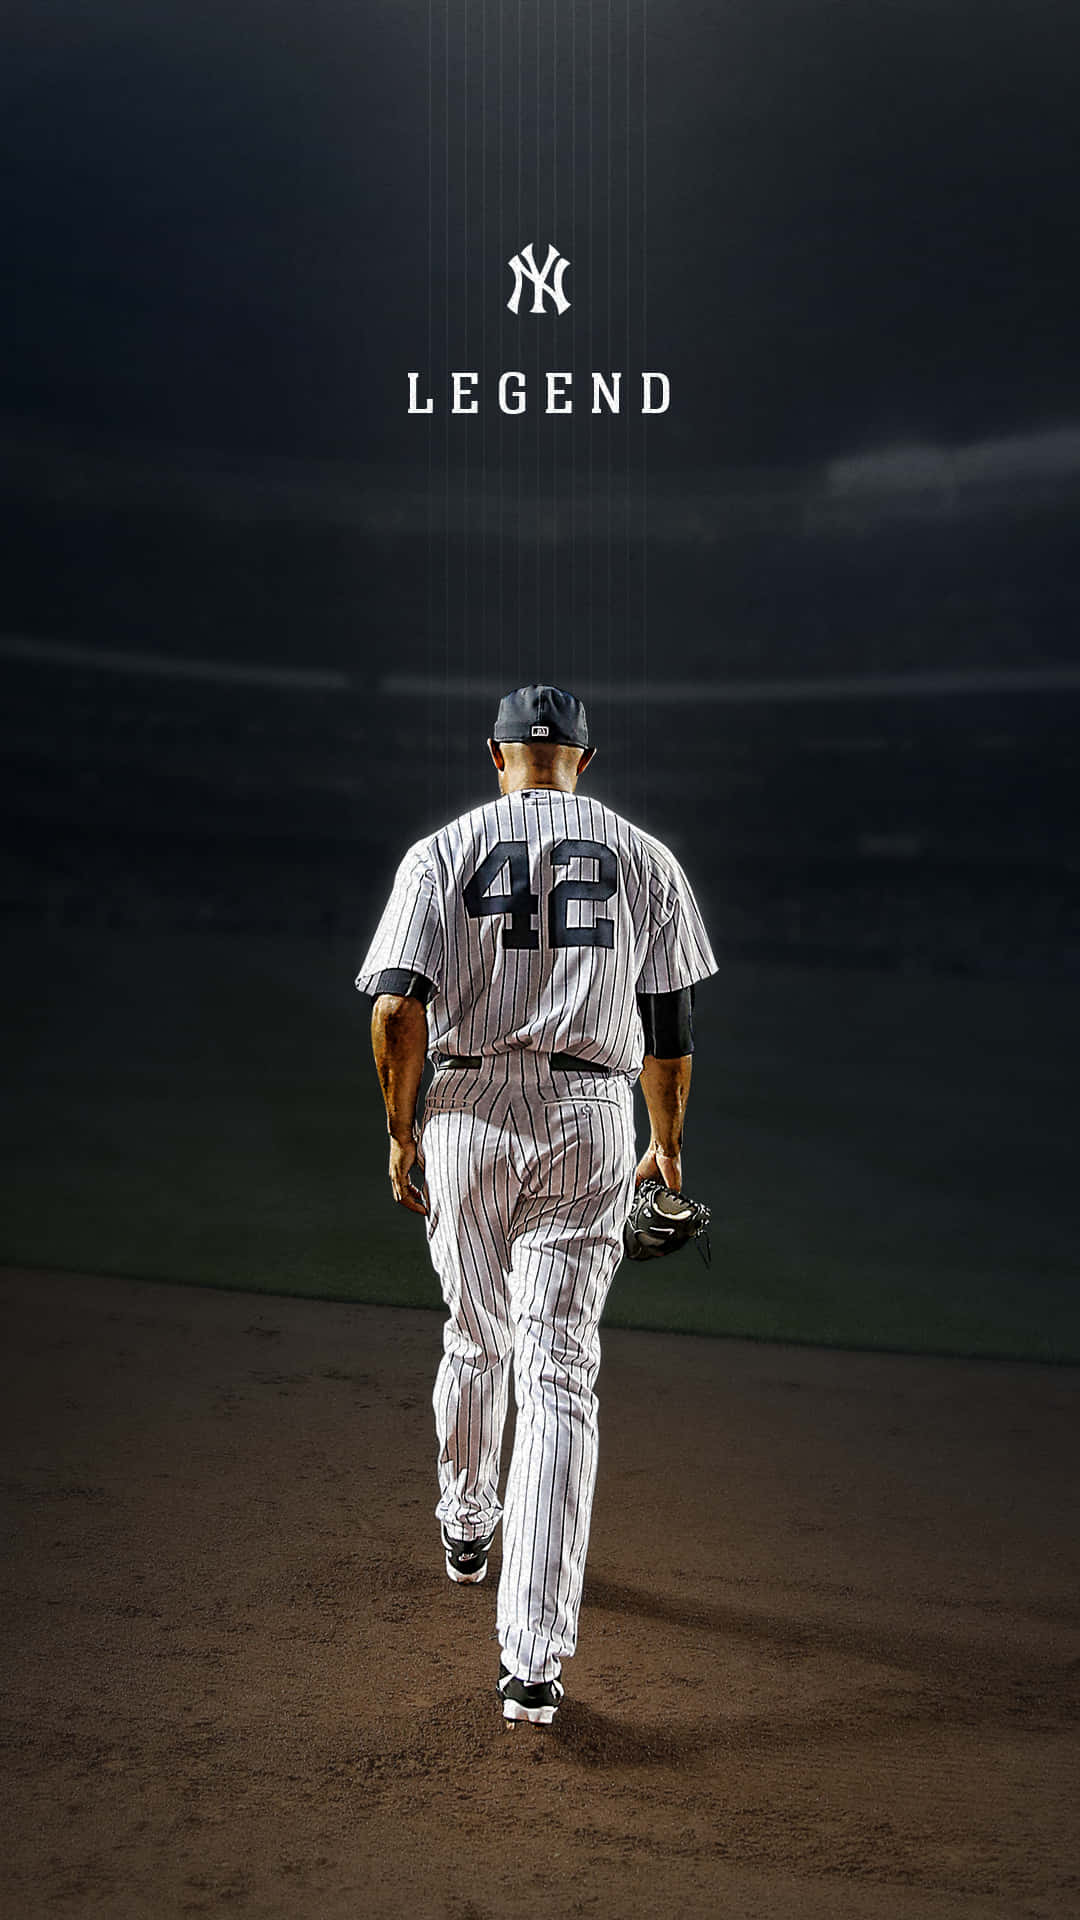 Sättmariano Rivera Från New York Yankees Som Bakgrundsbild På Din Iphone. Wallpaper